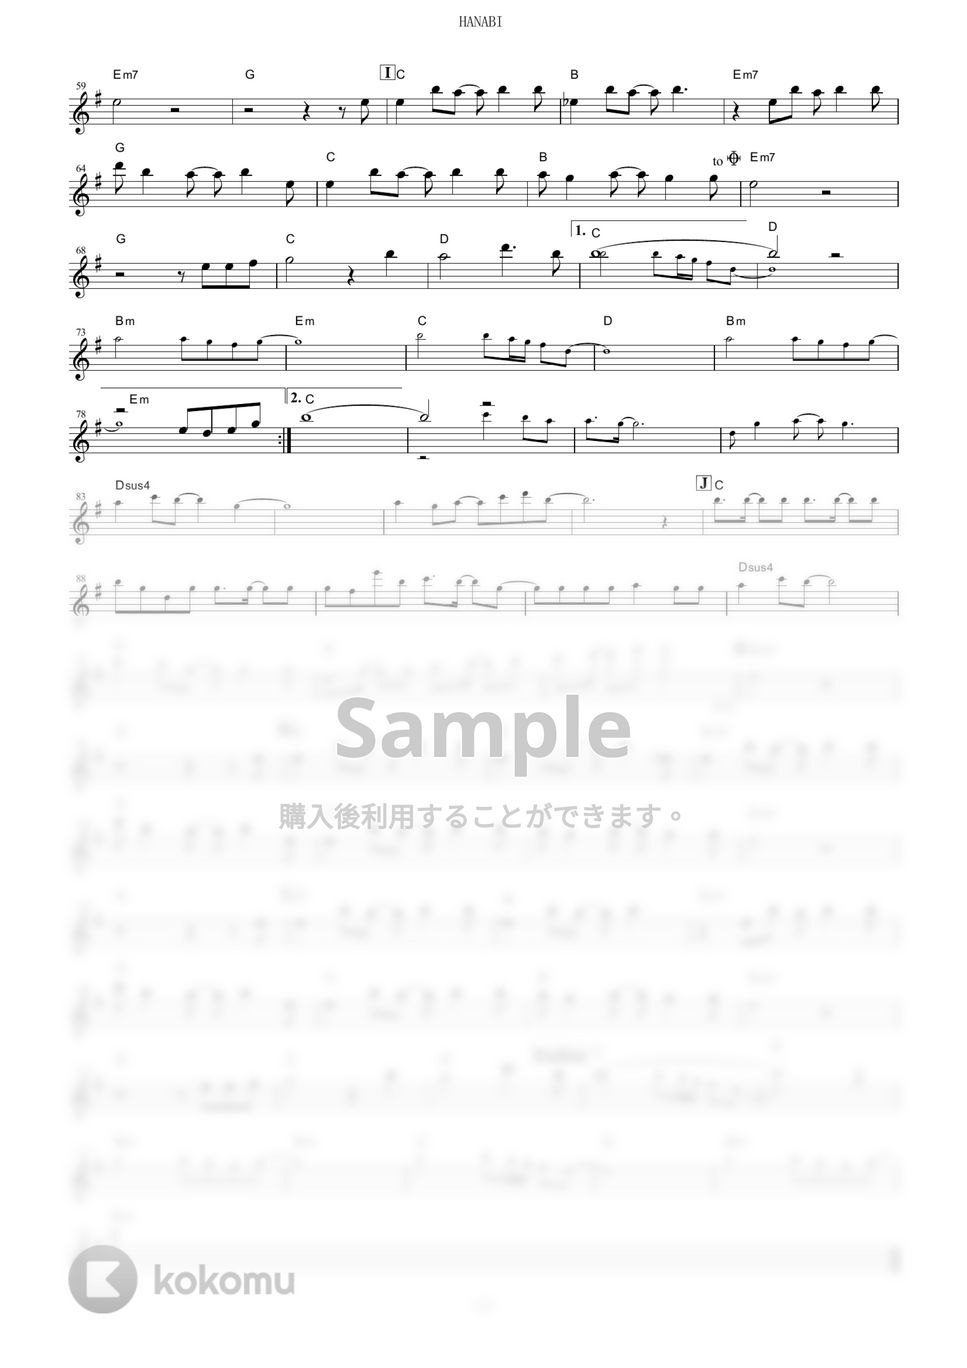 いきものがかり - HANABI (『BLEACH』 / in C) by muta-sax